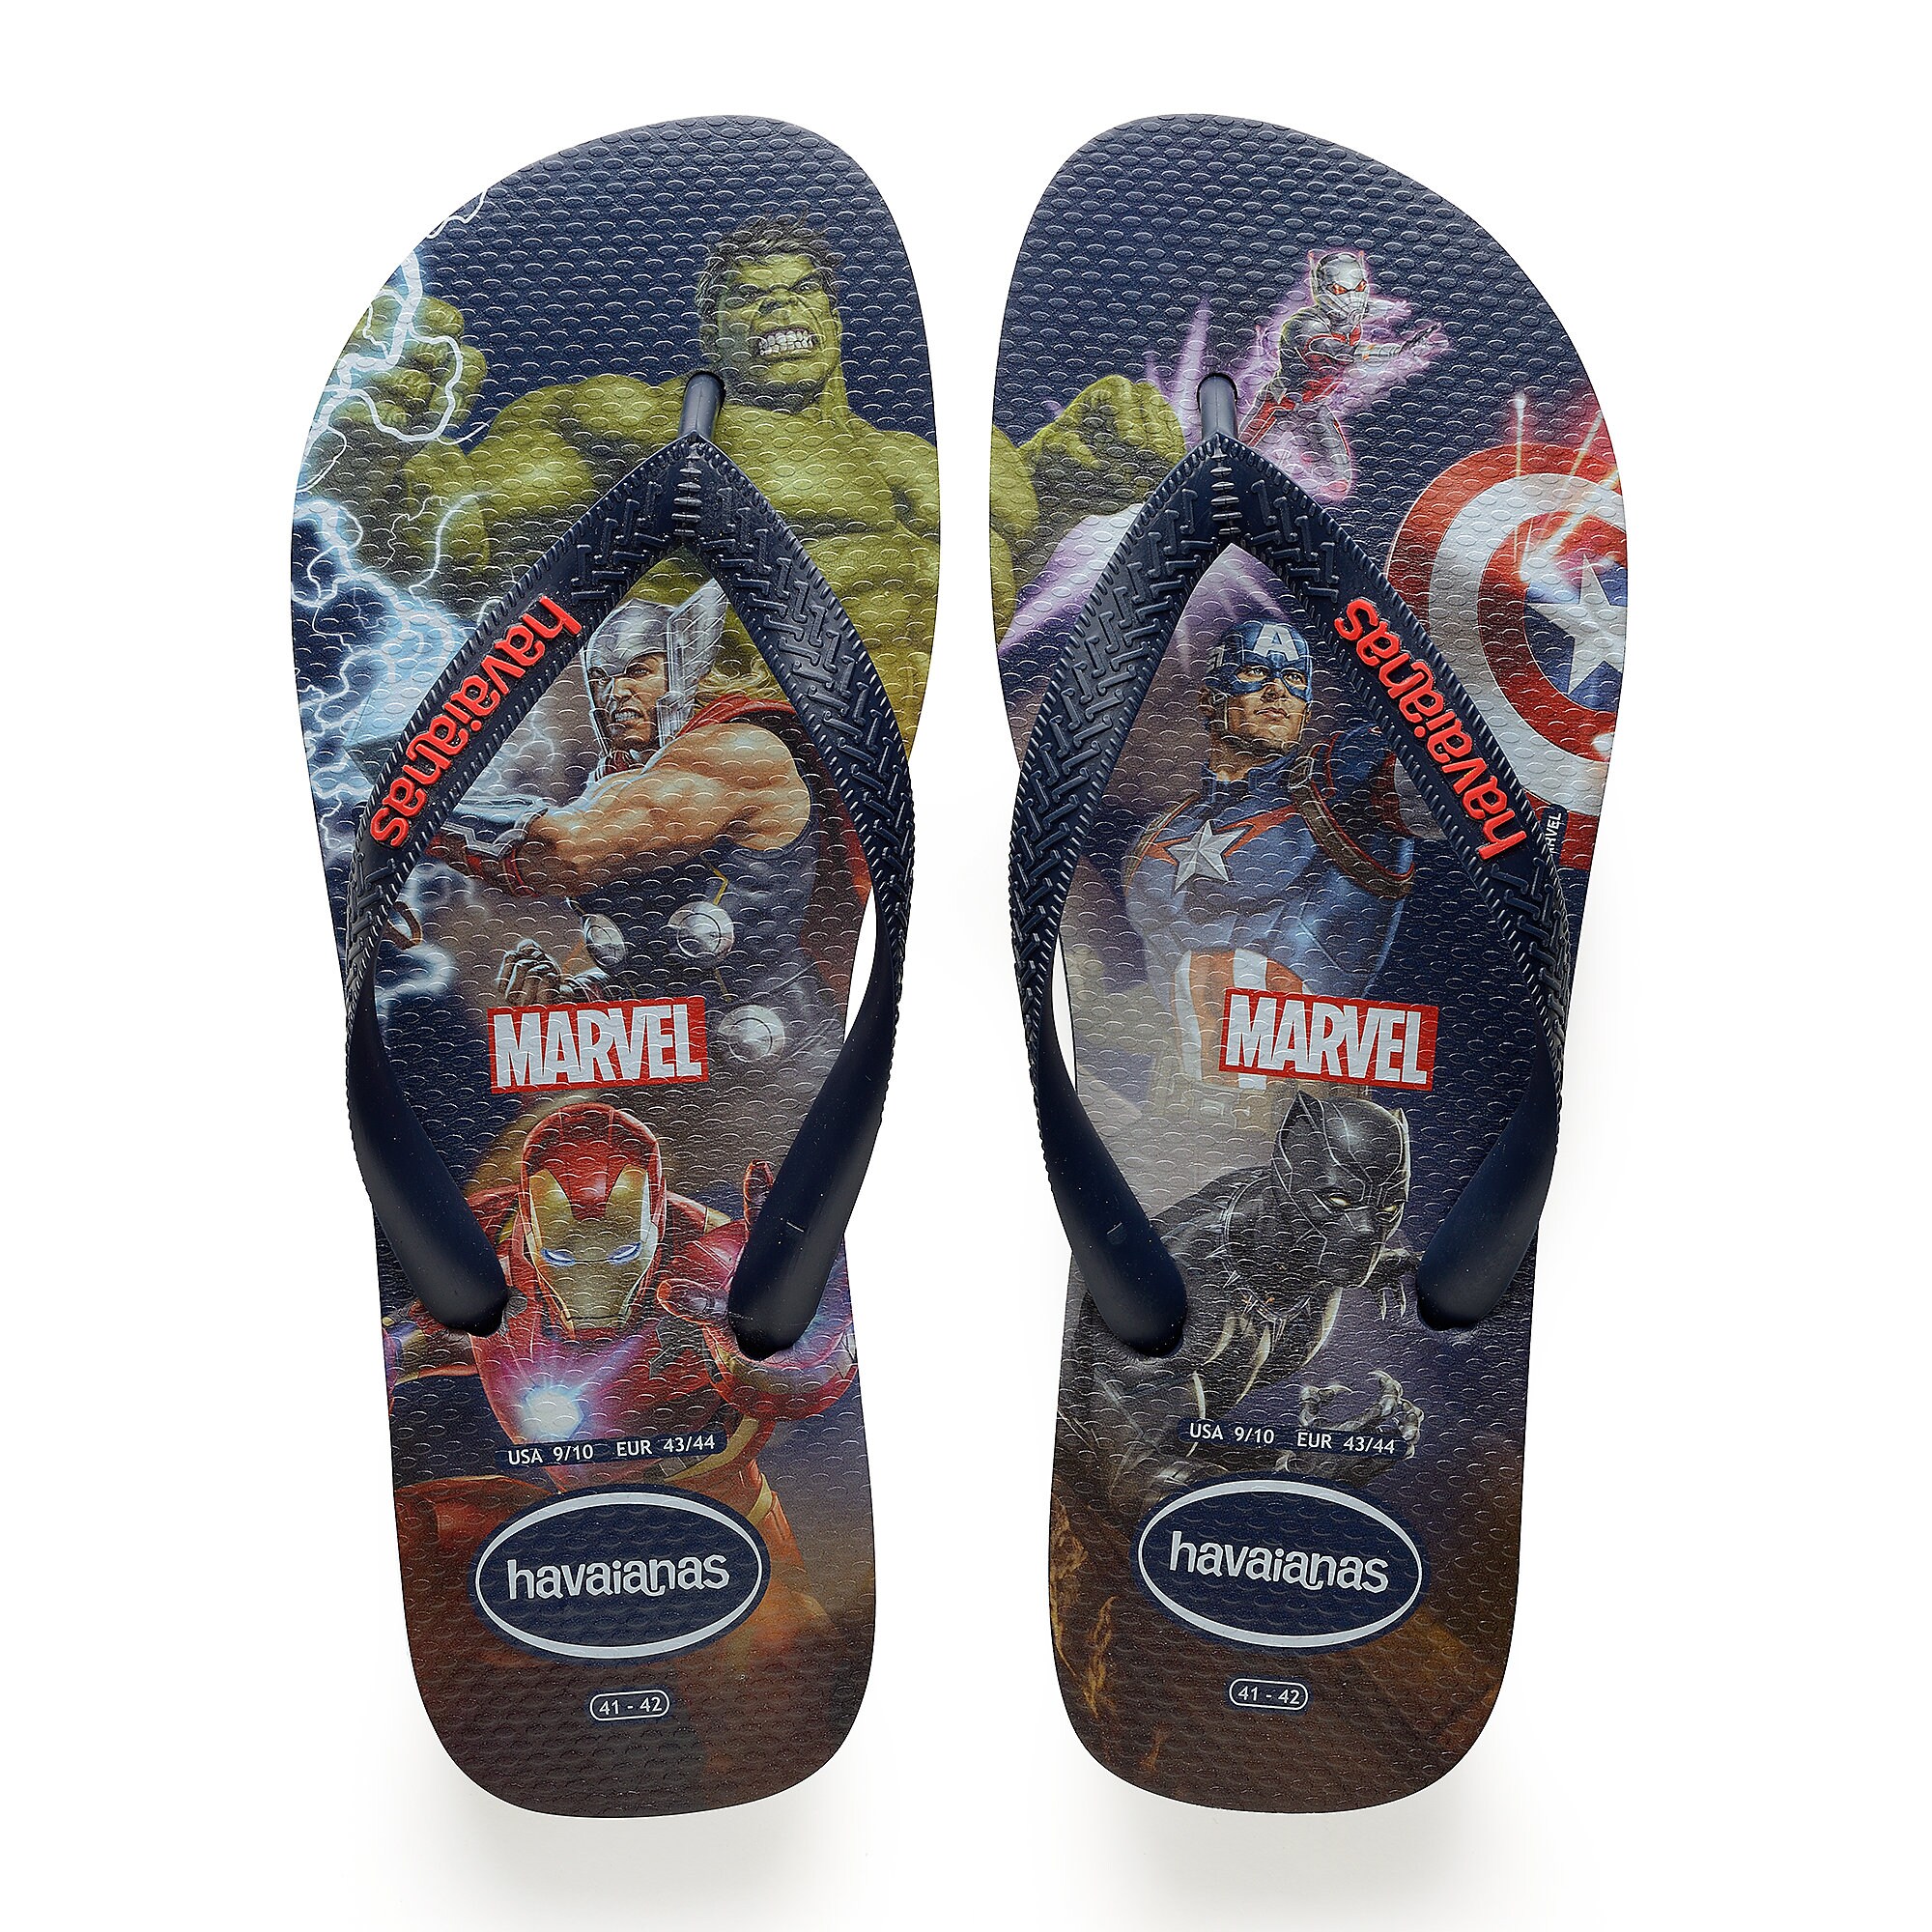 Marvel's Avengers Flip Flops for Men by Havaianas